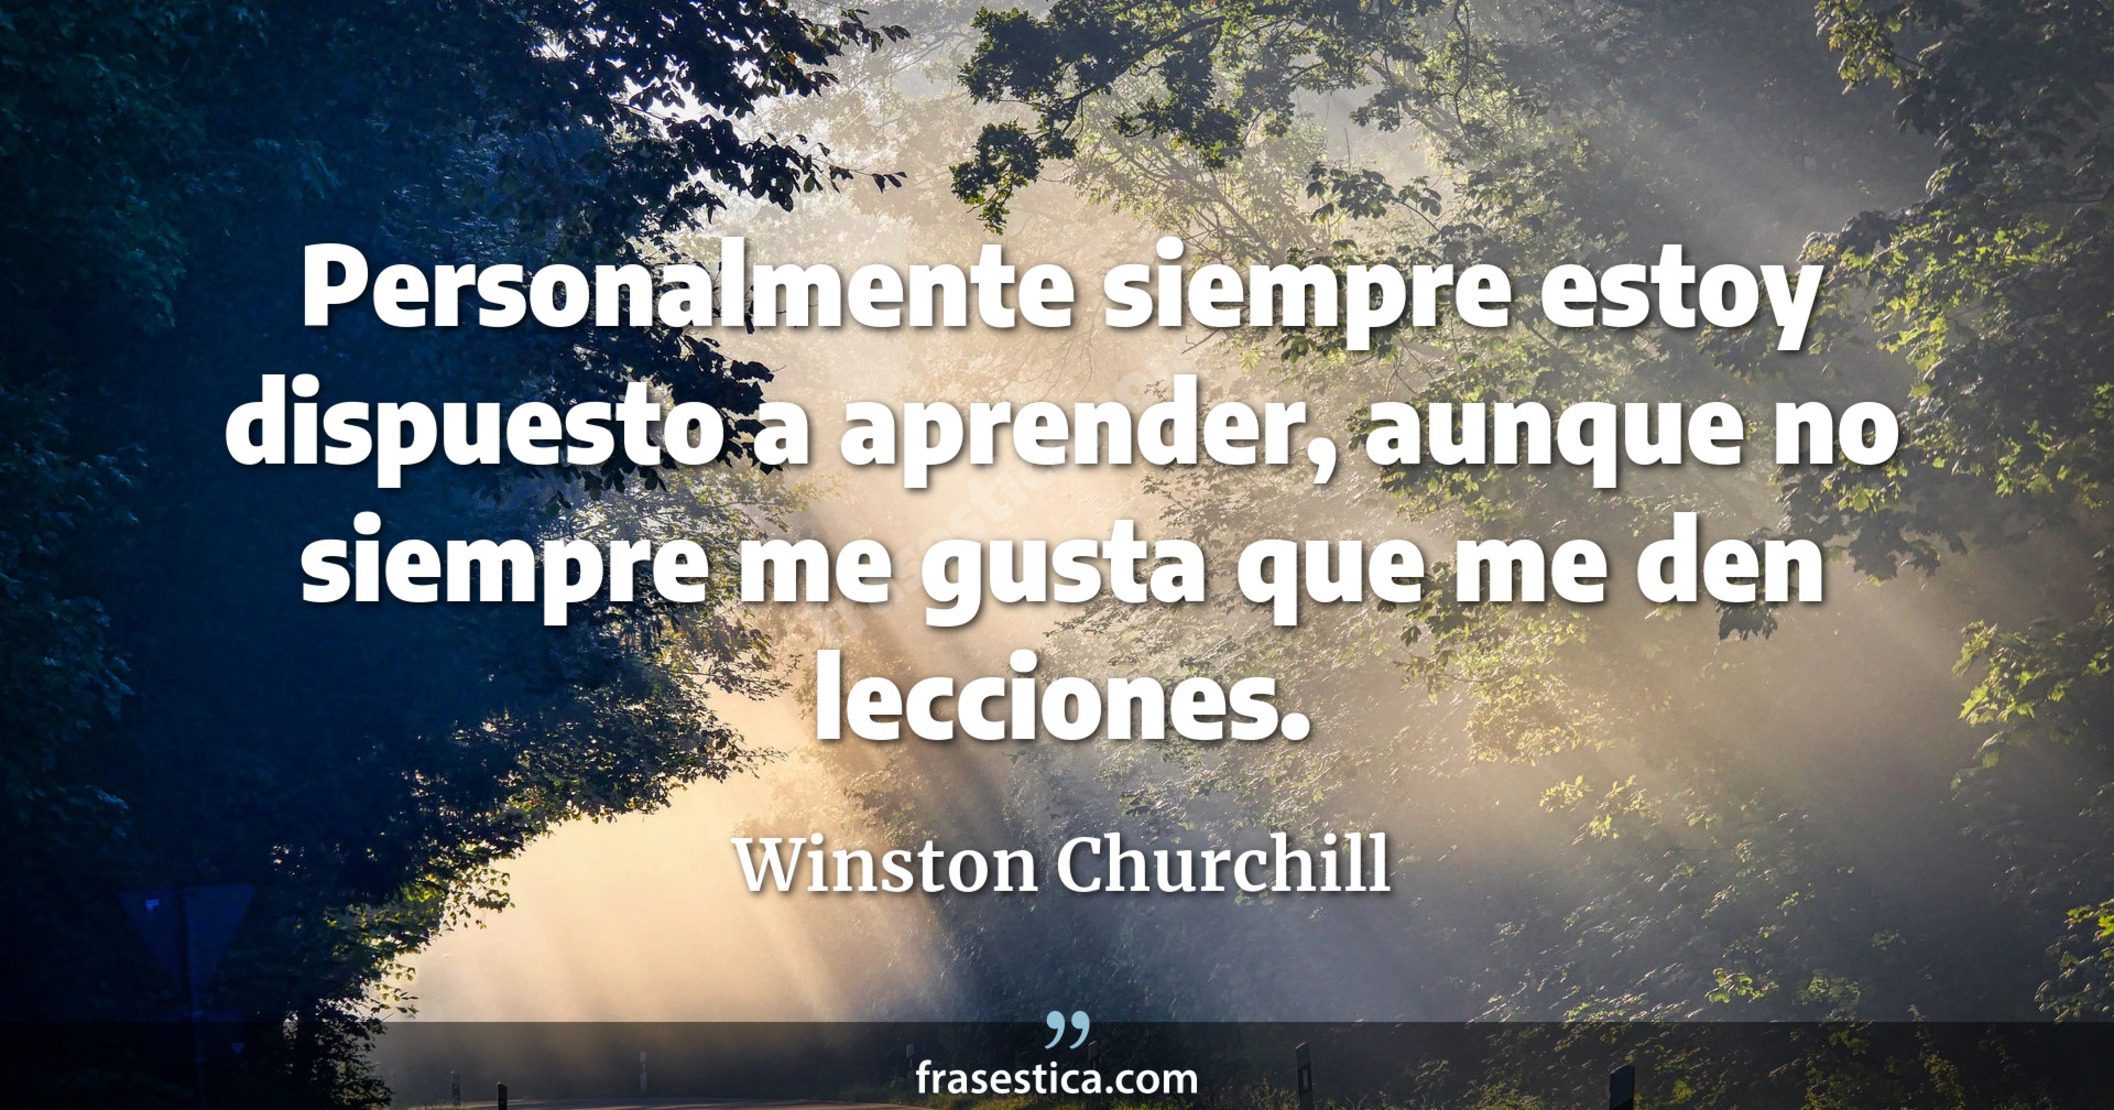 Personalmente siempre estoy dispuesto a aprender, aunque no siempre me gusta que me den lecciones. - Winston Churchill